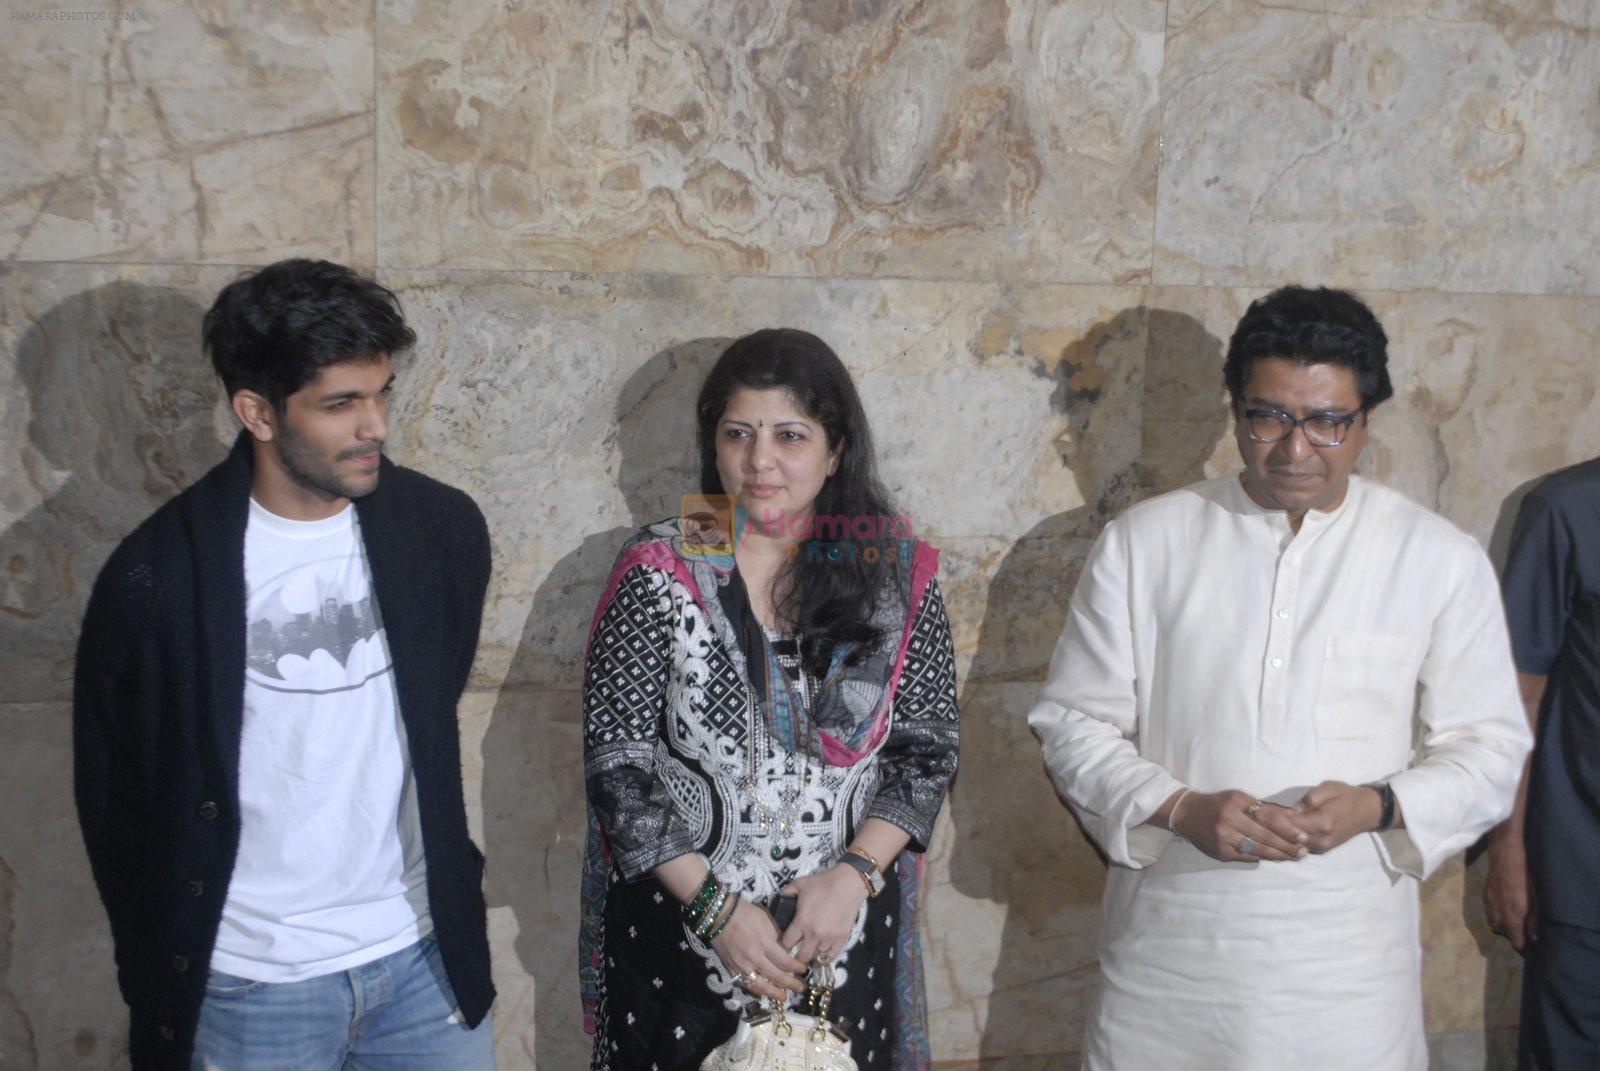 Amit Thackeray, Sharmila Thackeray, Raj Thackeray at Special screening of PK for Sachin Tendulkar & Raj Thackeray on 16th Dec 2014